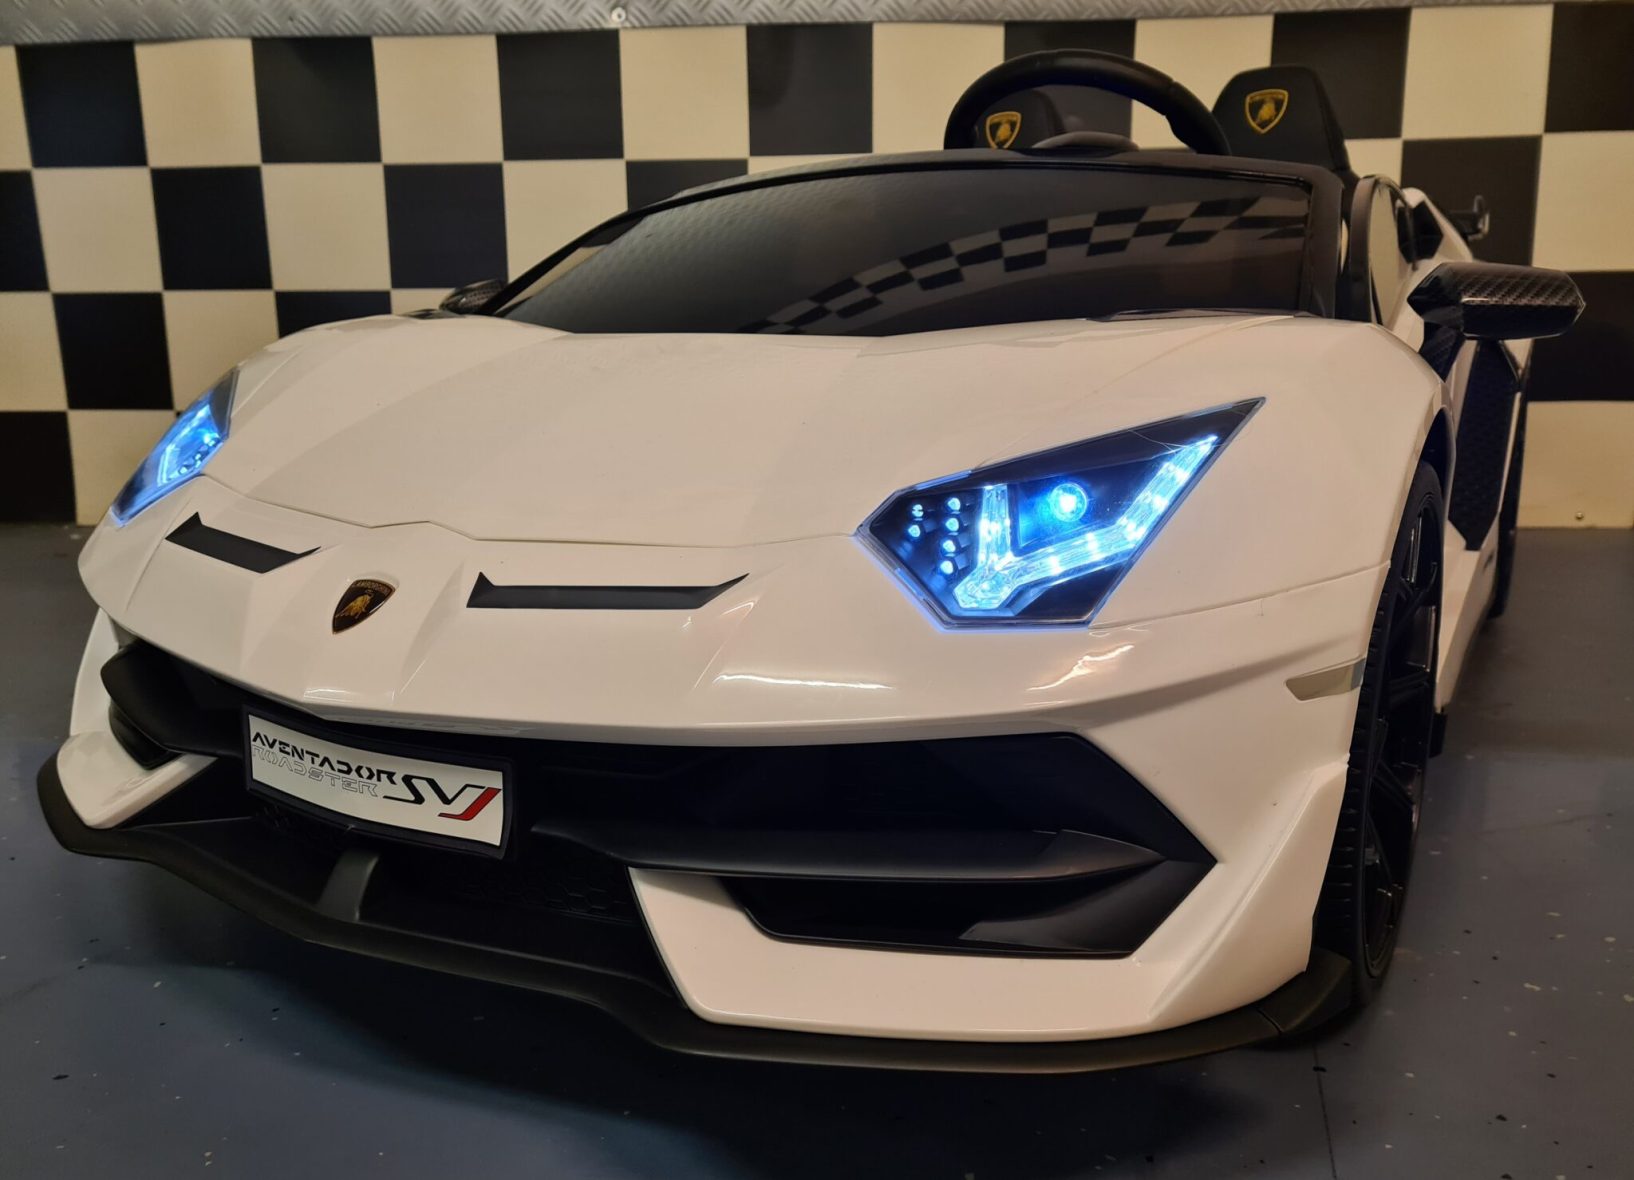 Lamborghini Aventador 2 Person 24 Volt with Drift White